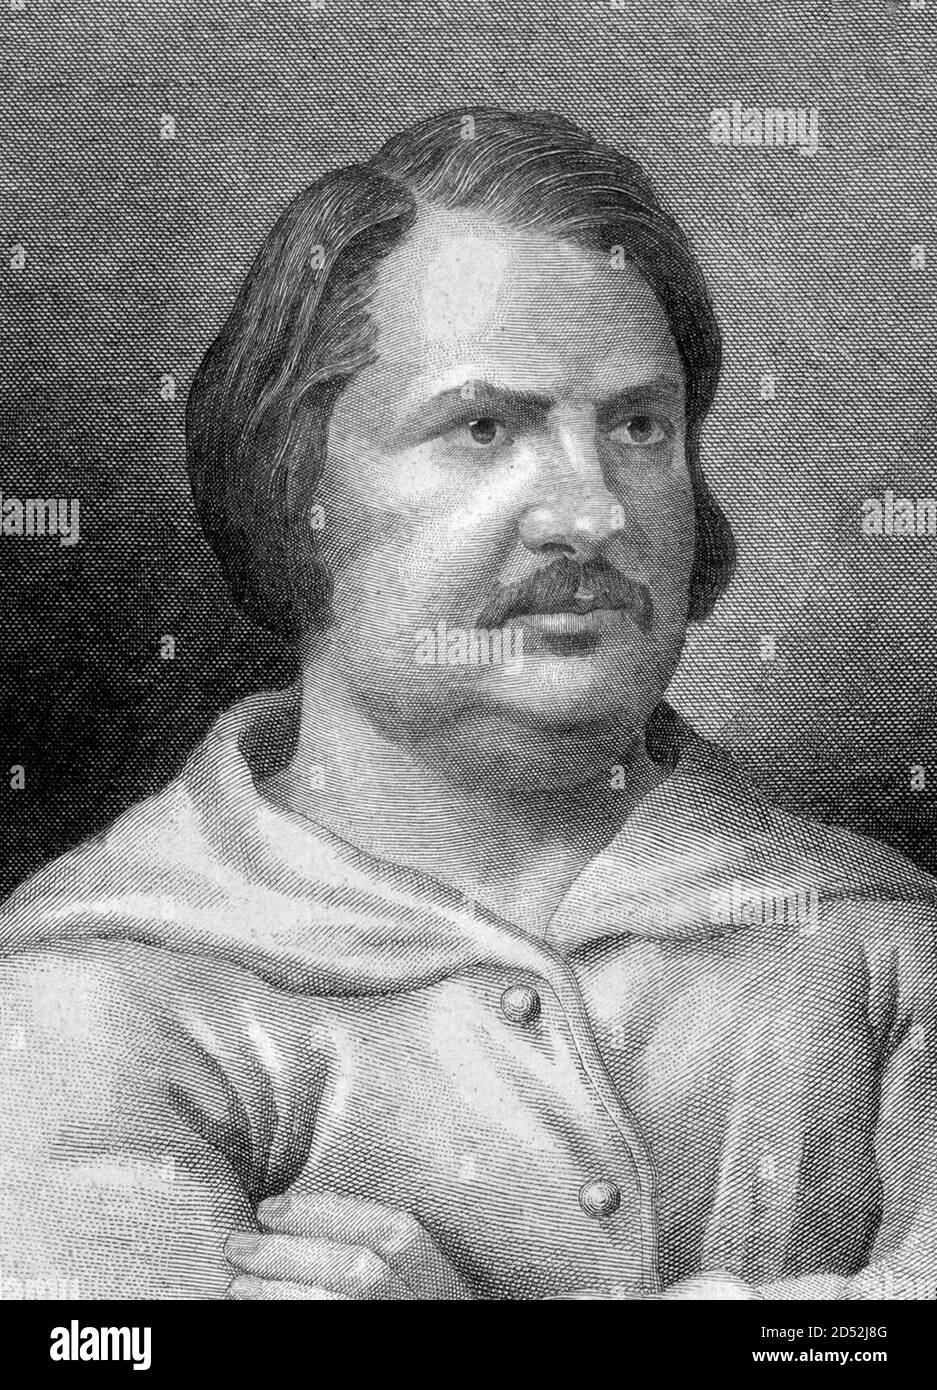 Honoré de Balzac. Porträt des französischen Schriftstellers und Dramatikers, Honoré de Balzac (1799-1850) von Adrien-Jean Nargeot, Stich aus dem 19. Jahrhundert Stockfoto